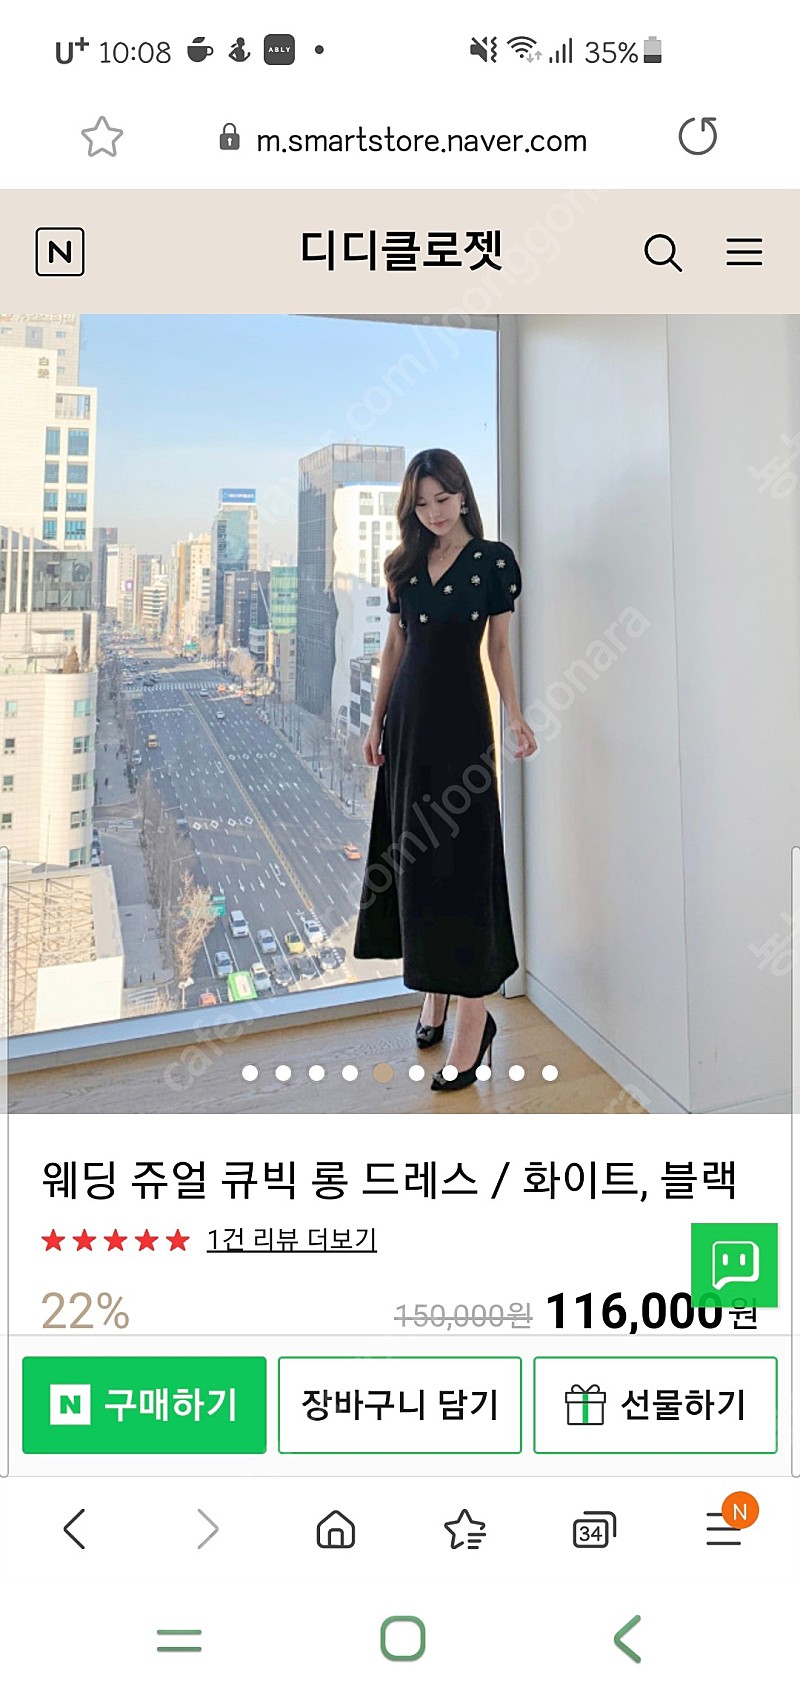 디디클로젯 웨딩 쥬얼 큐빅드레스 블랙 (새상품) 택포 9만 돌잔치 웨딩